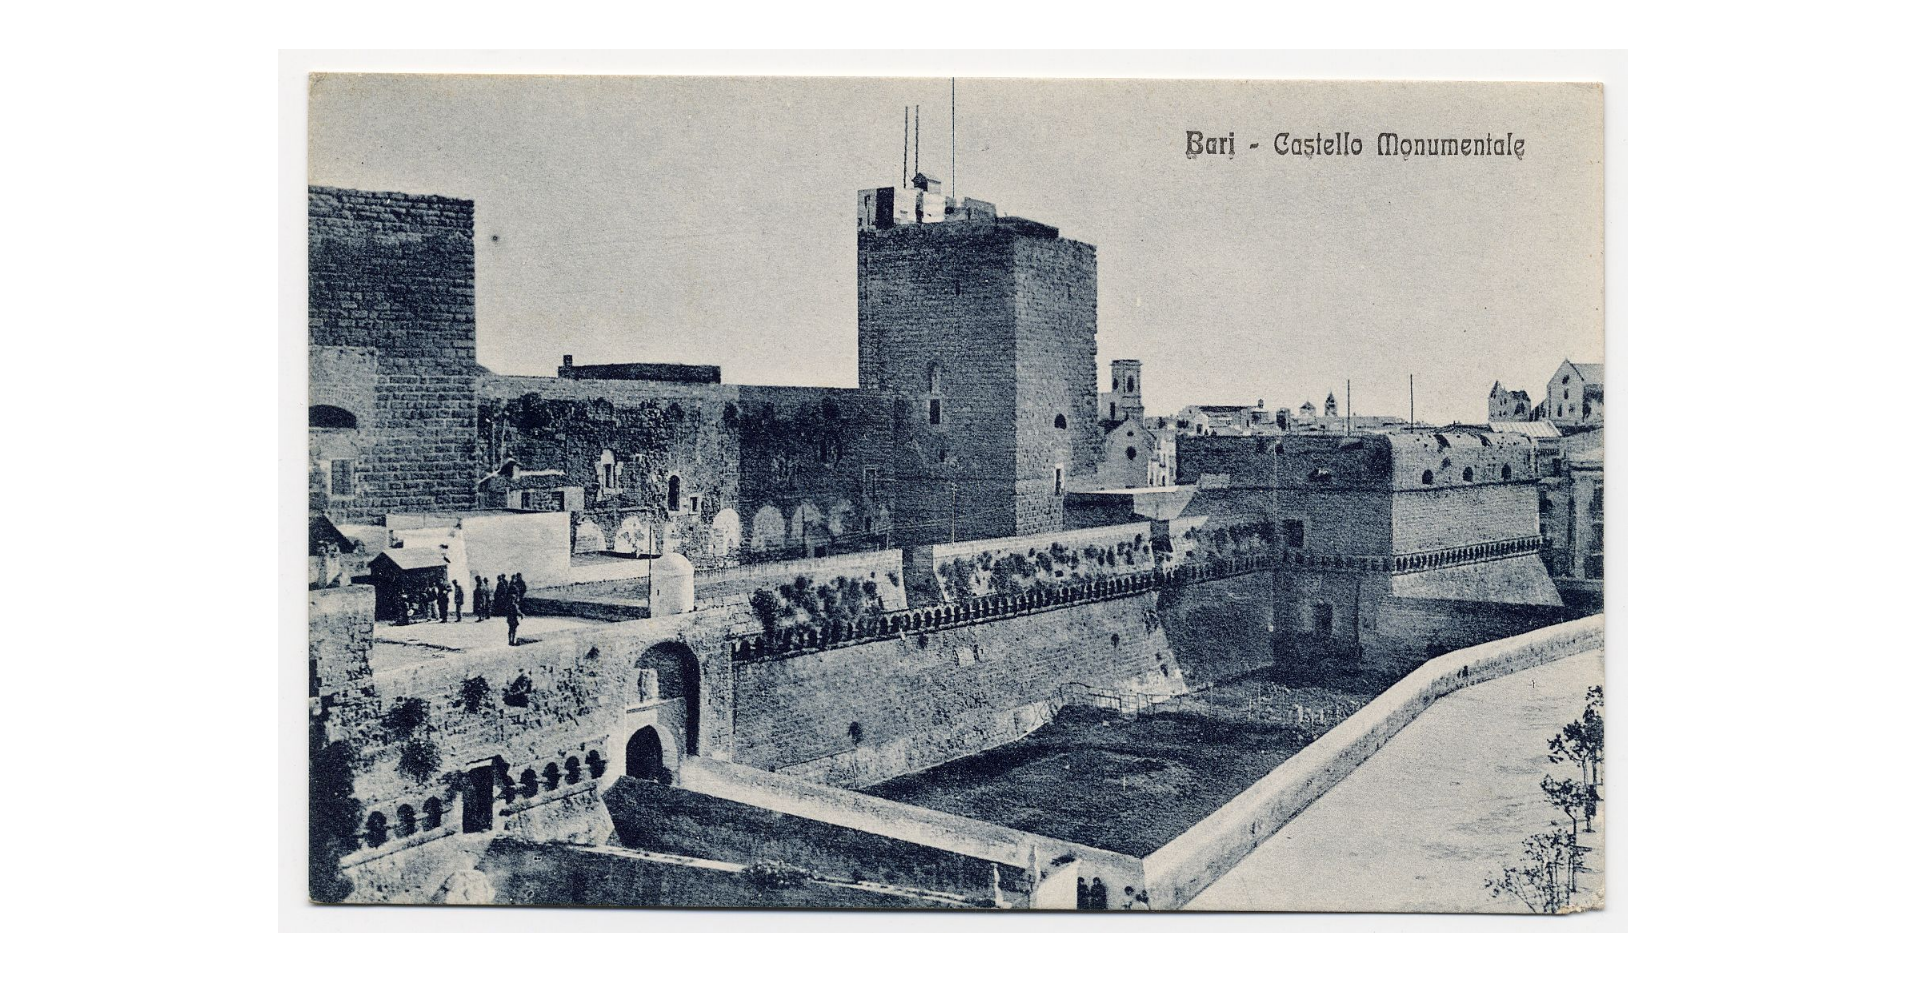 Fotografo non identificato, Bari - Castello monumentale, 1951-2000, cartolina, FFC018243